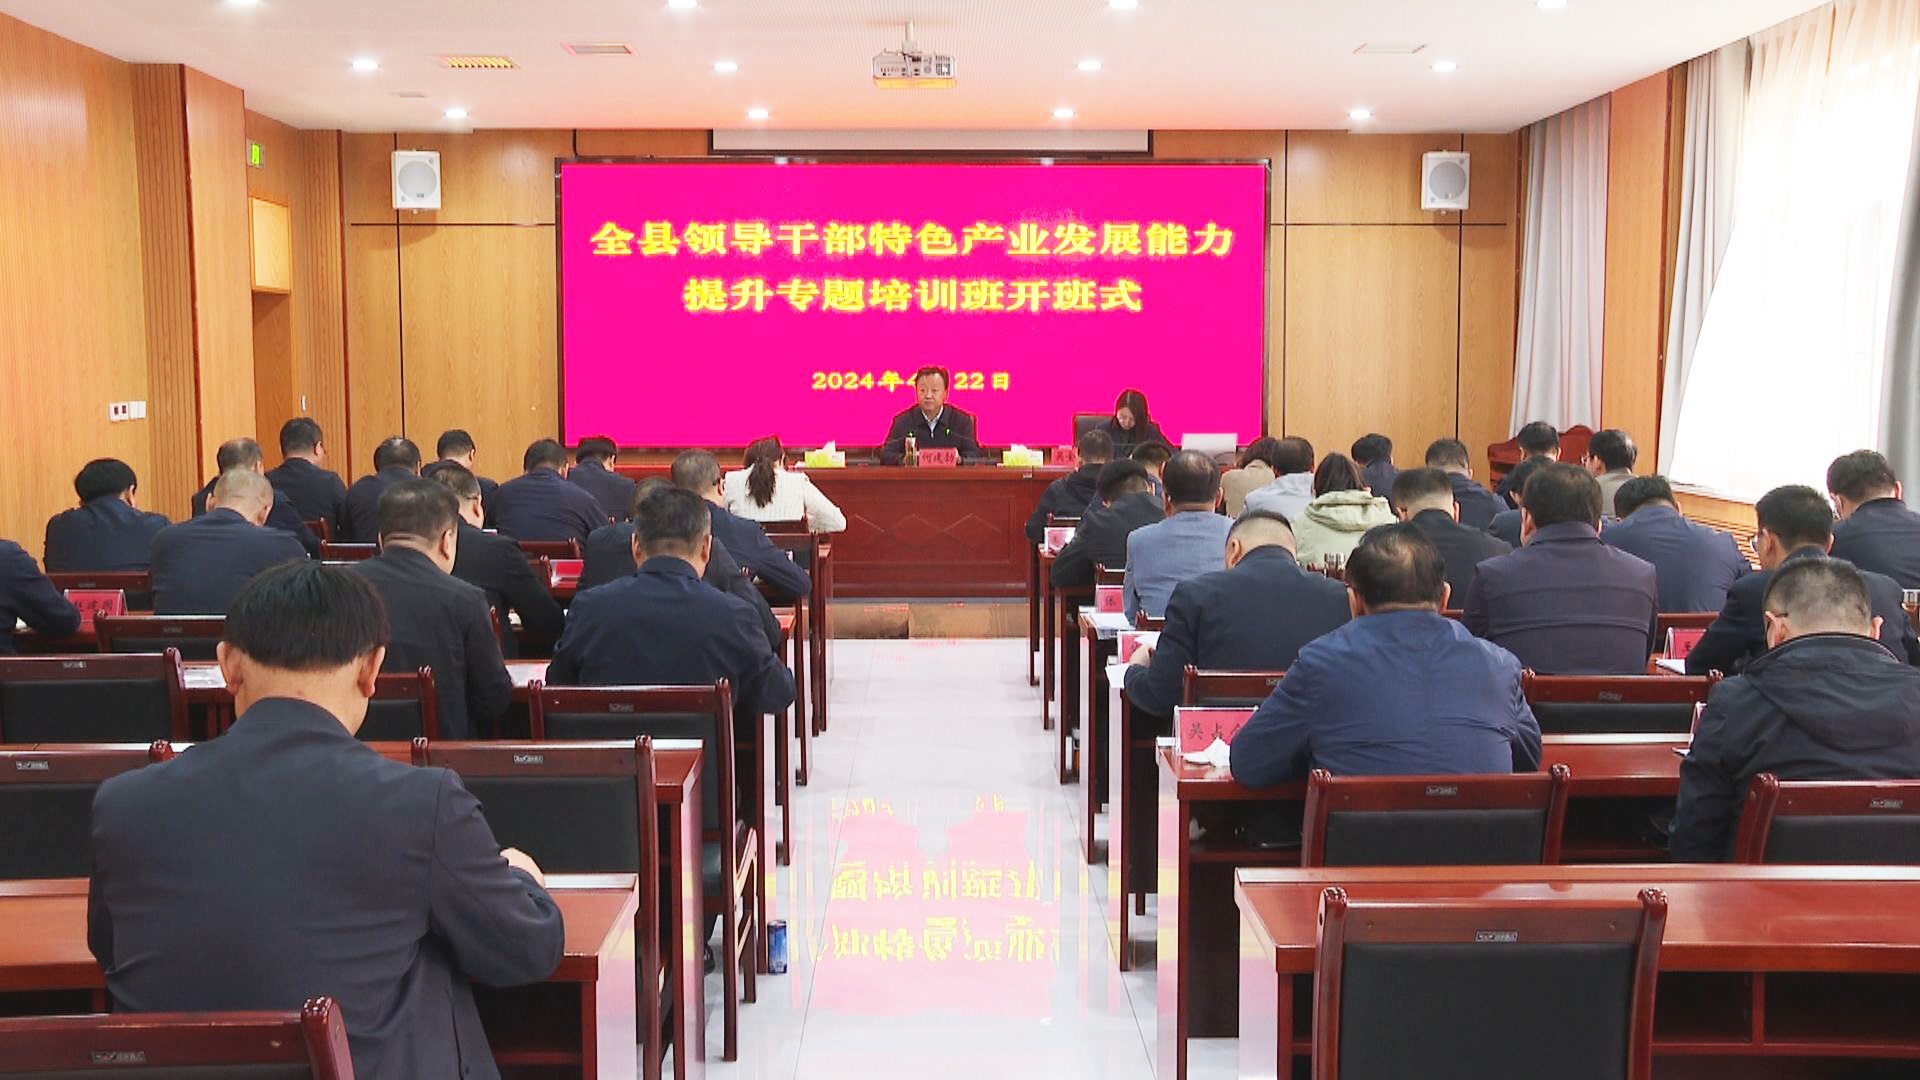 中宁县举办领导干部特色产业发展能力提升专题培训班 (3)1.jpg